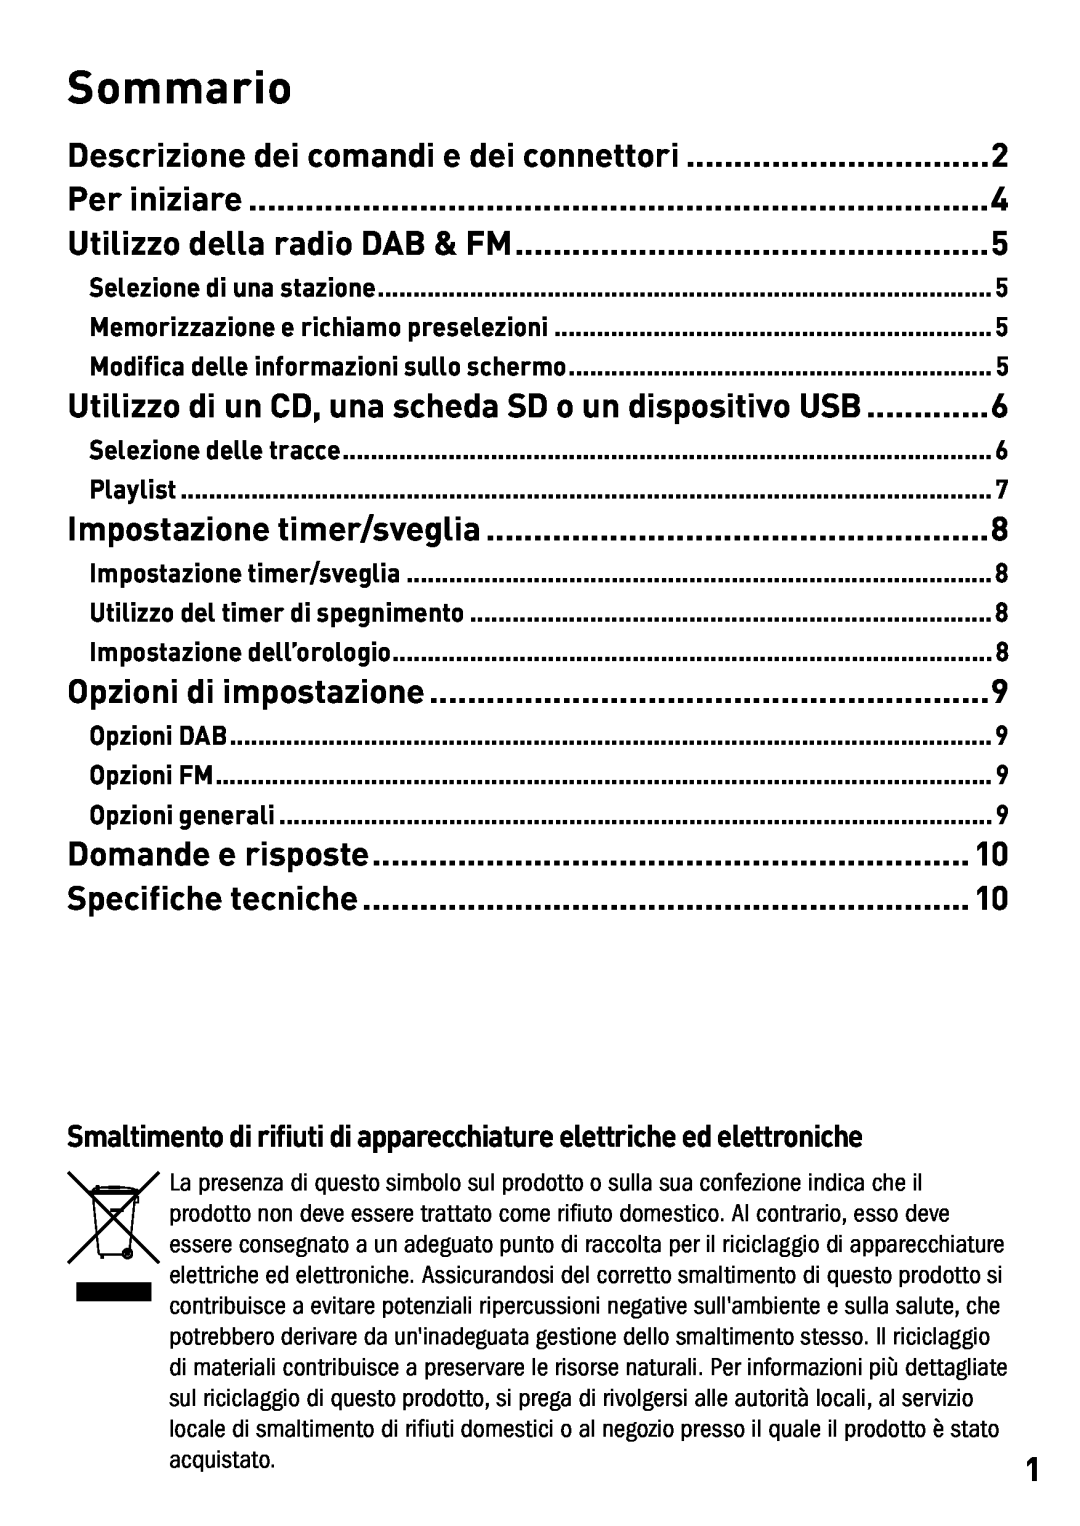 Pure Digital DMX-25 manual Sommario, Descrizione dei comandi e dei connettori, Per iniziare, Utilizzo della radio DAB & FM 